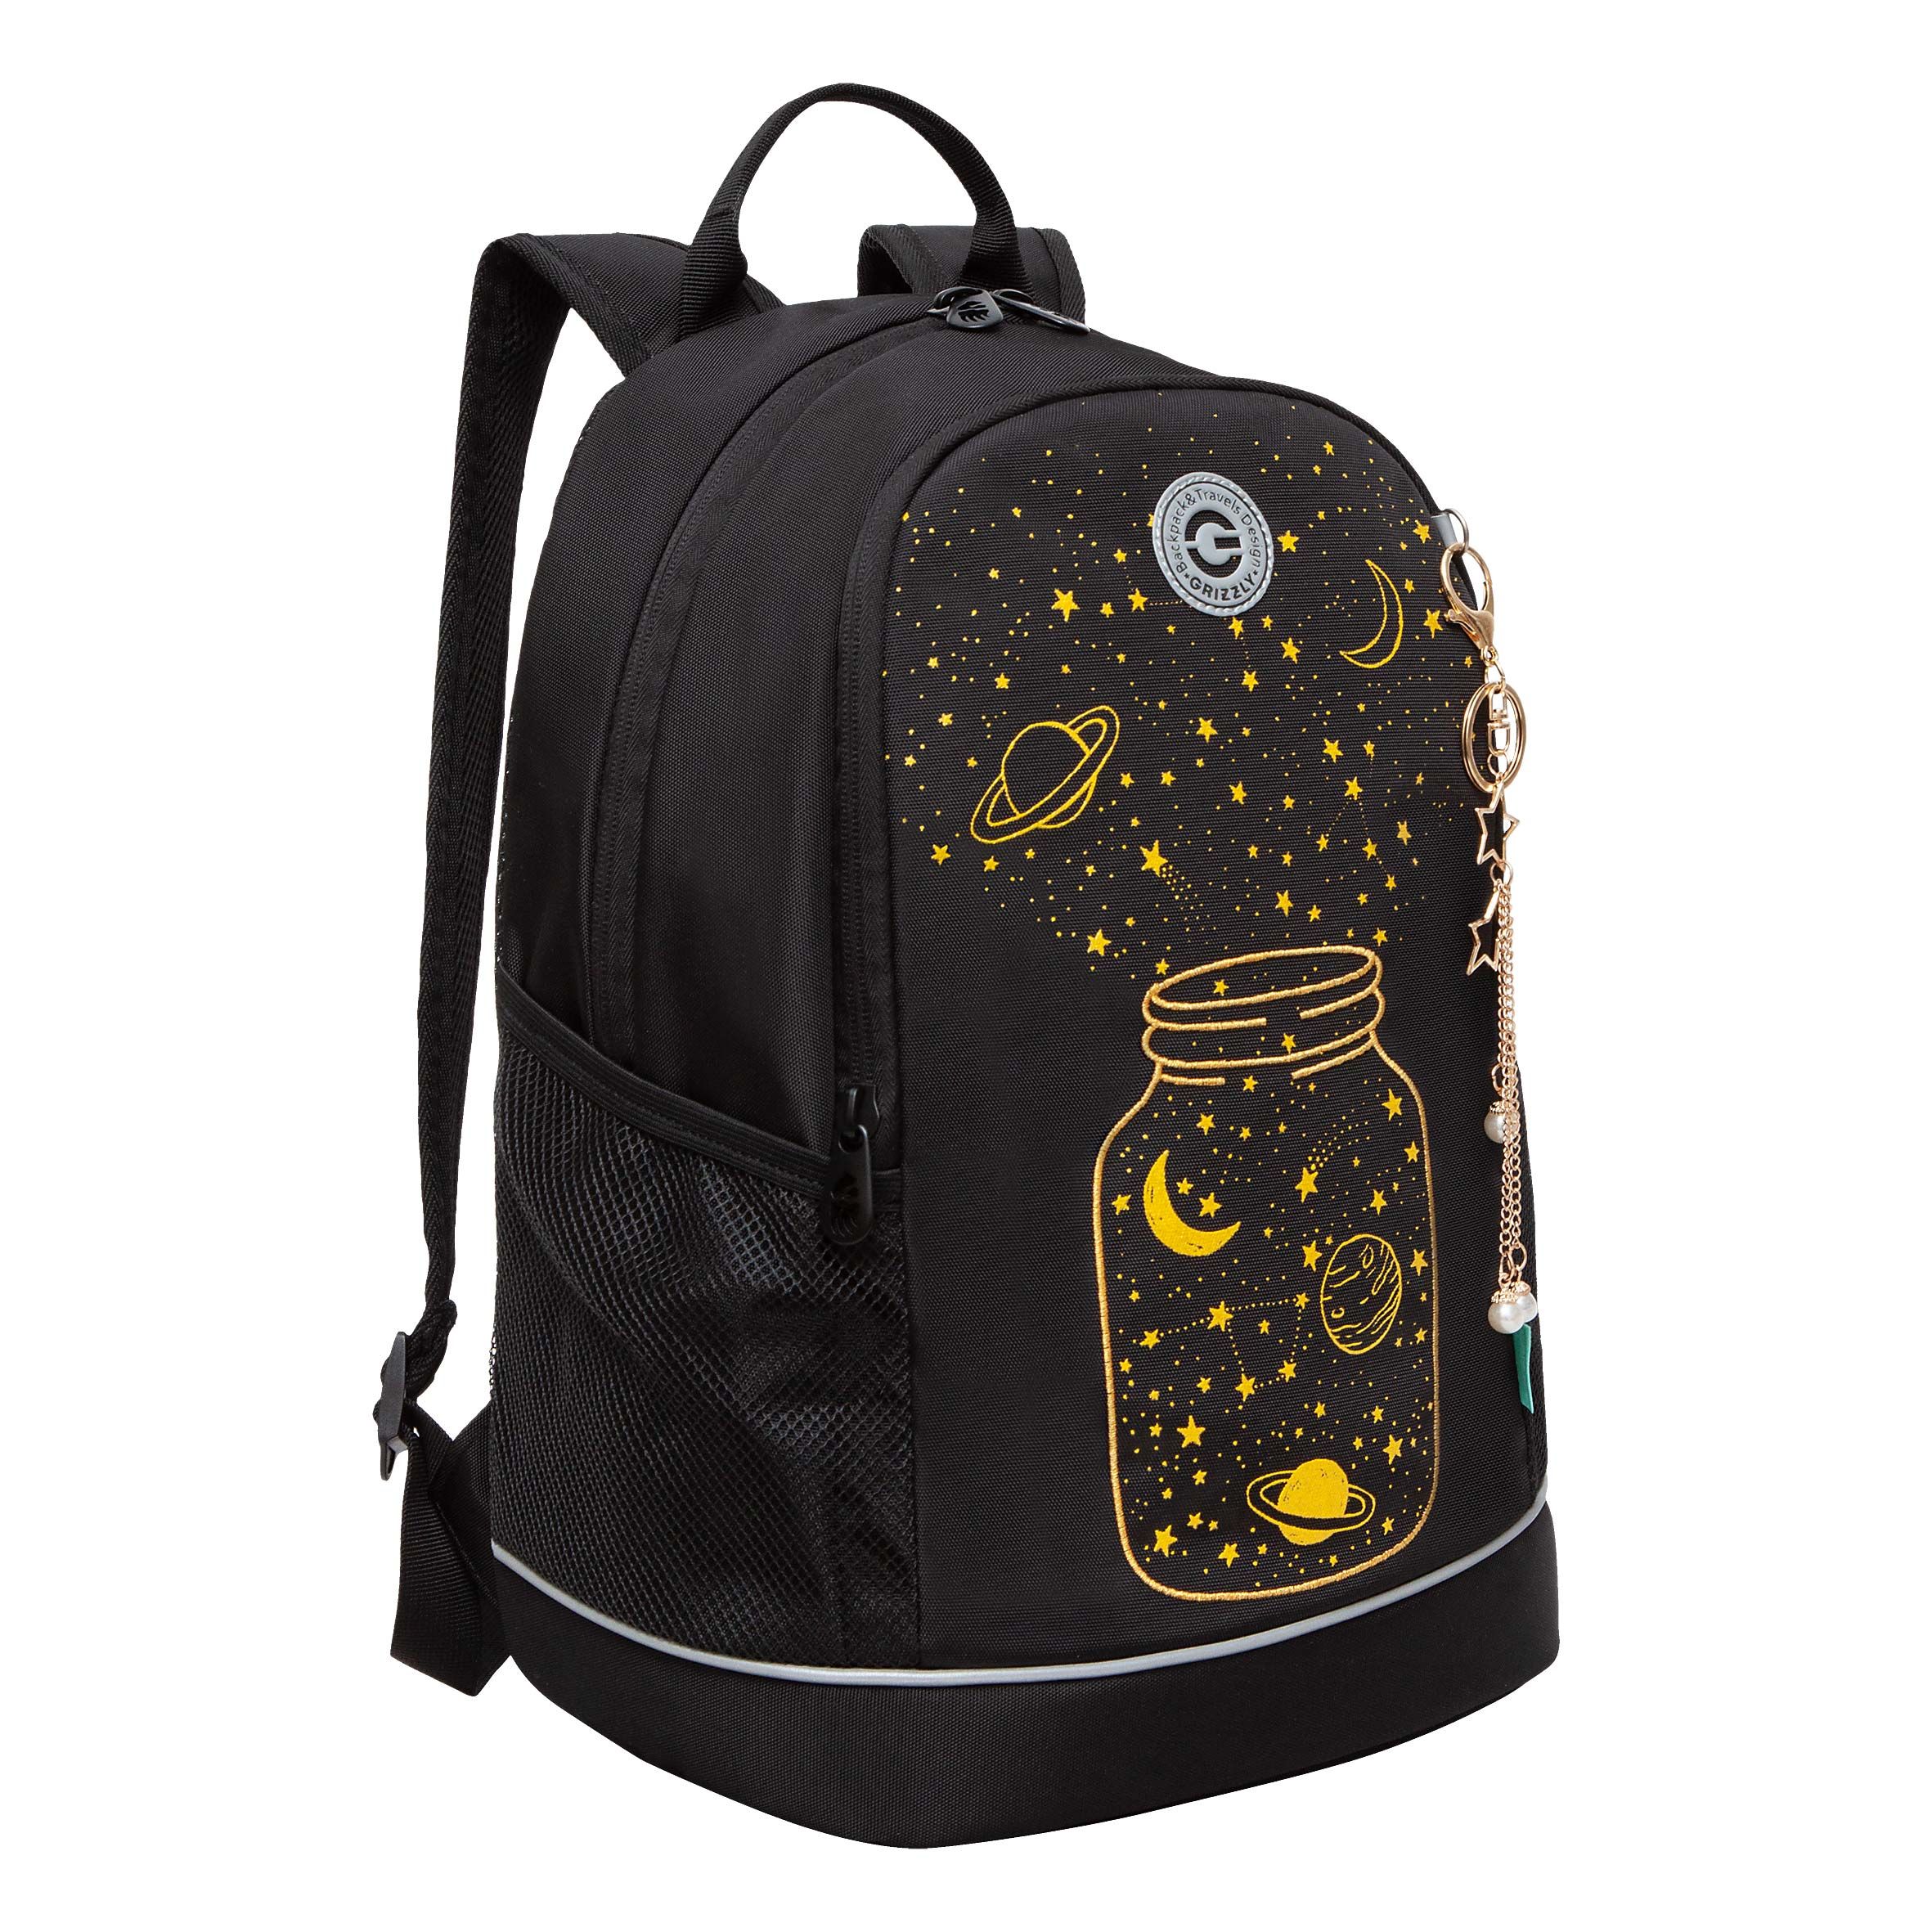 Рюкзак школьный GRIZZLY RG-463-3 с карманом для ноутбука 13 анатомический черный